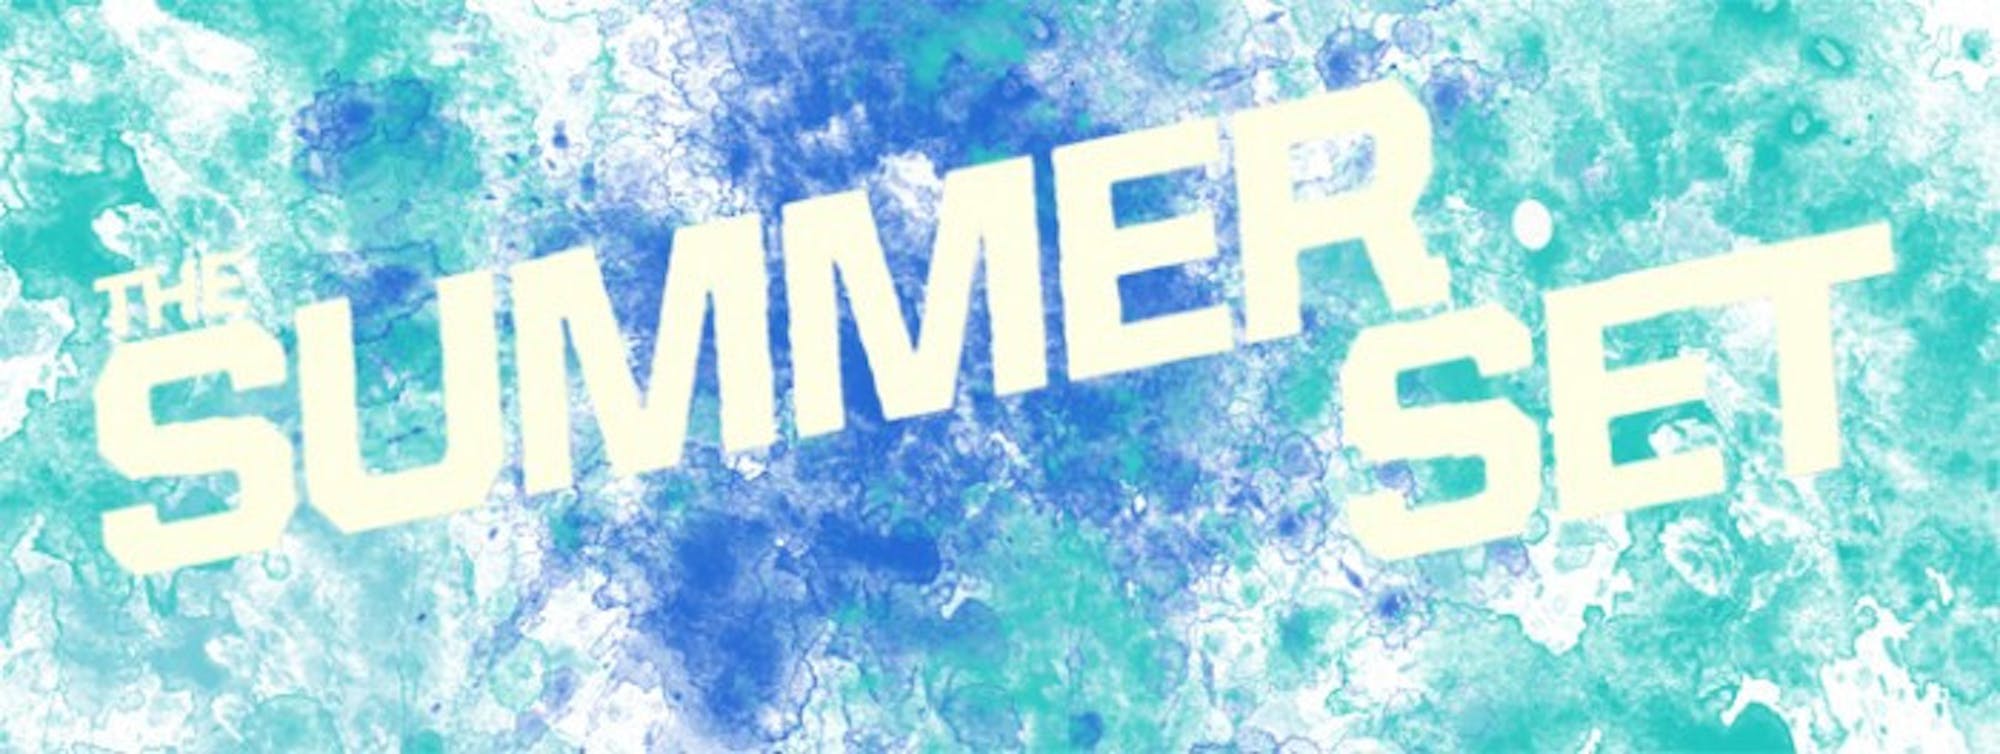 SummerSet_Banner_Web